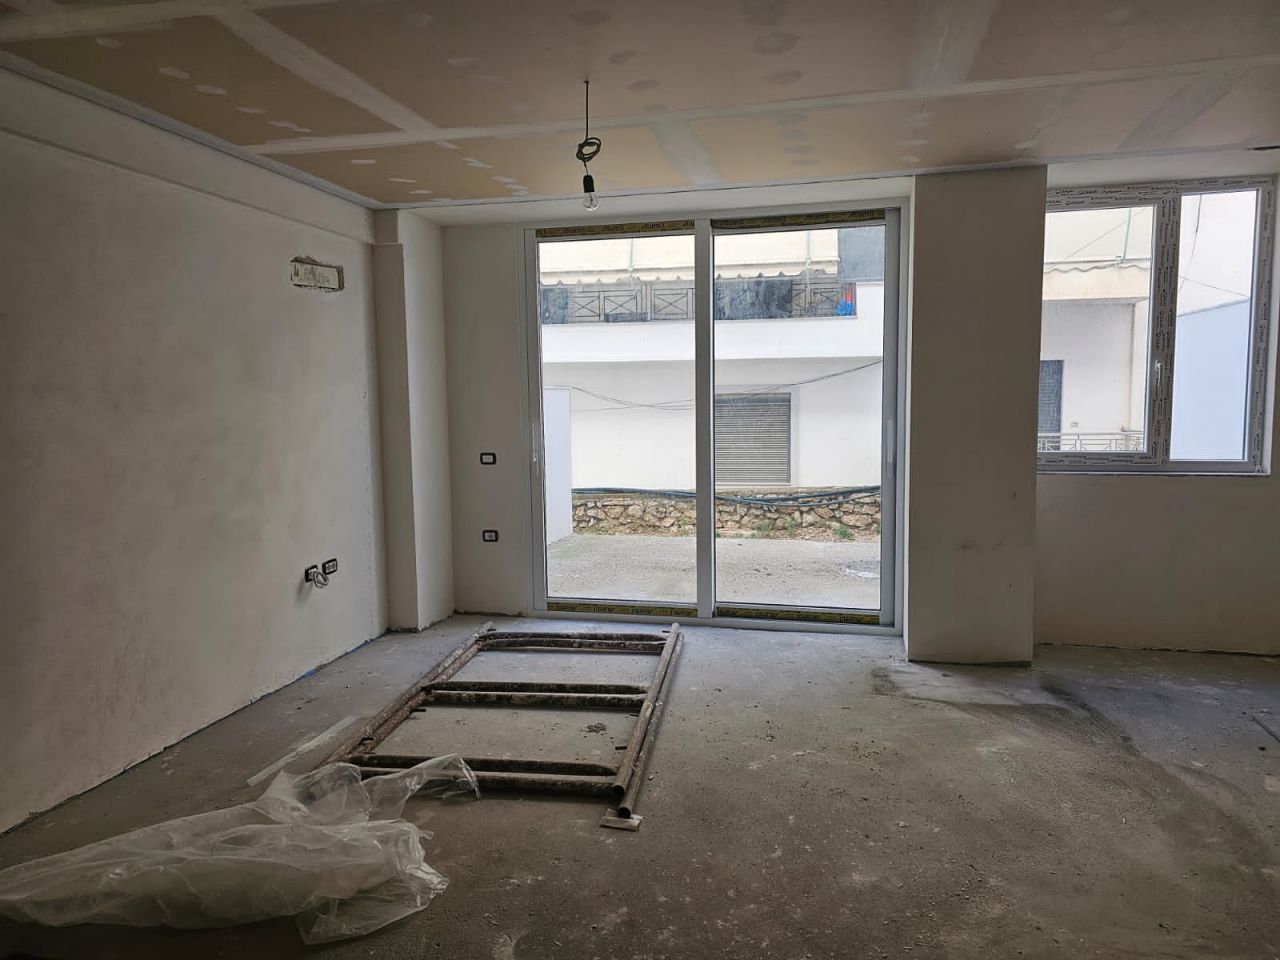 Duplex Apartment For Sale In Saranda Albania